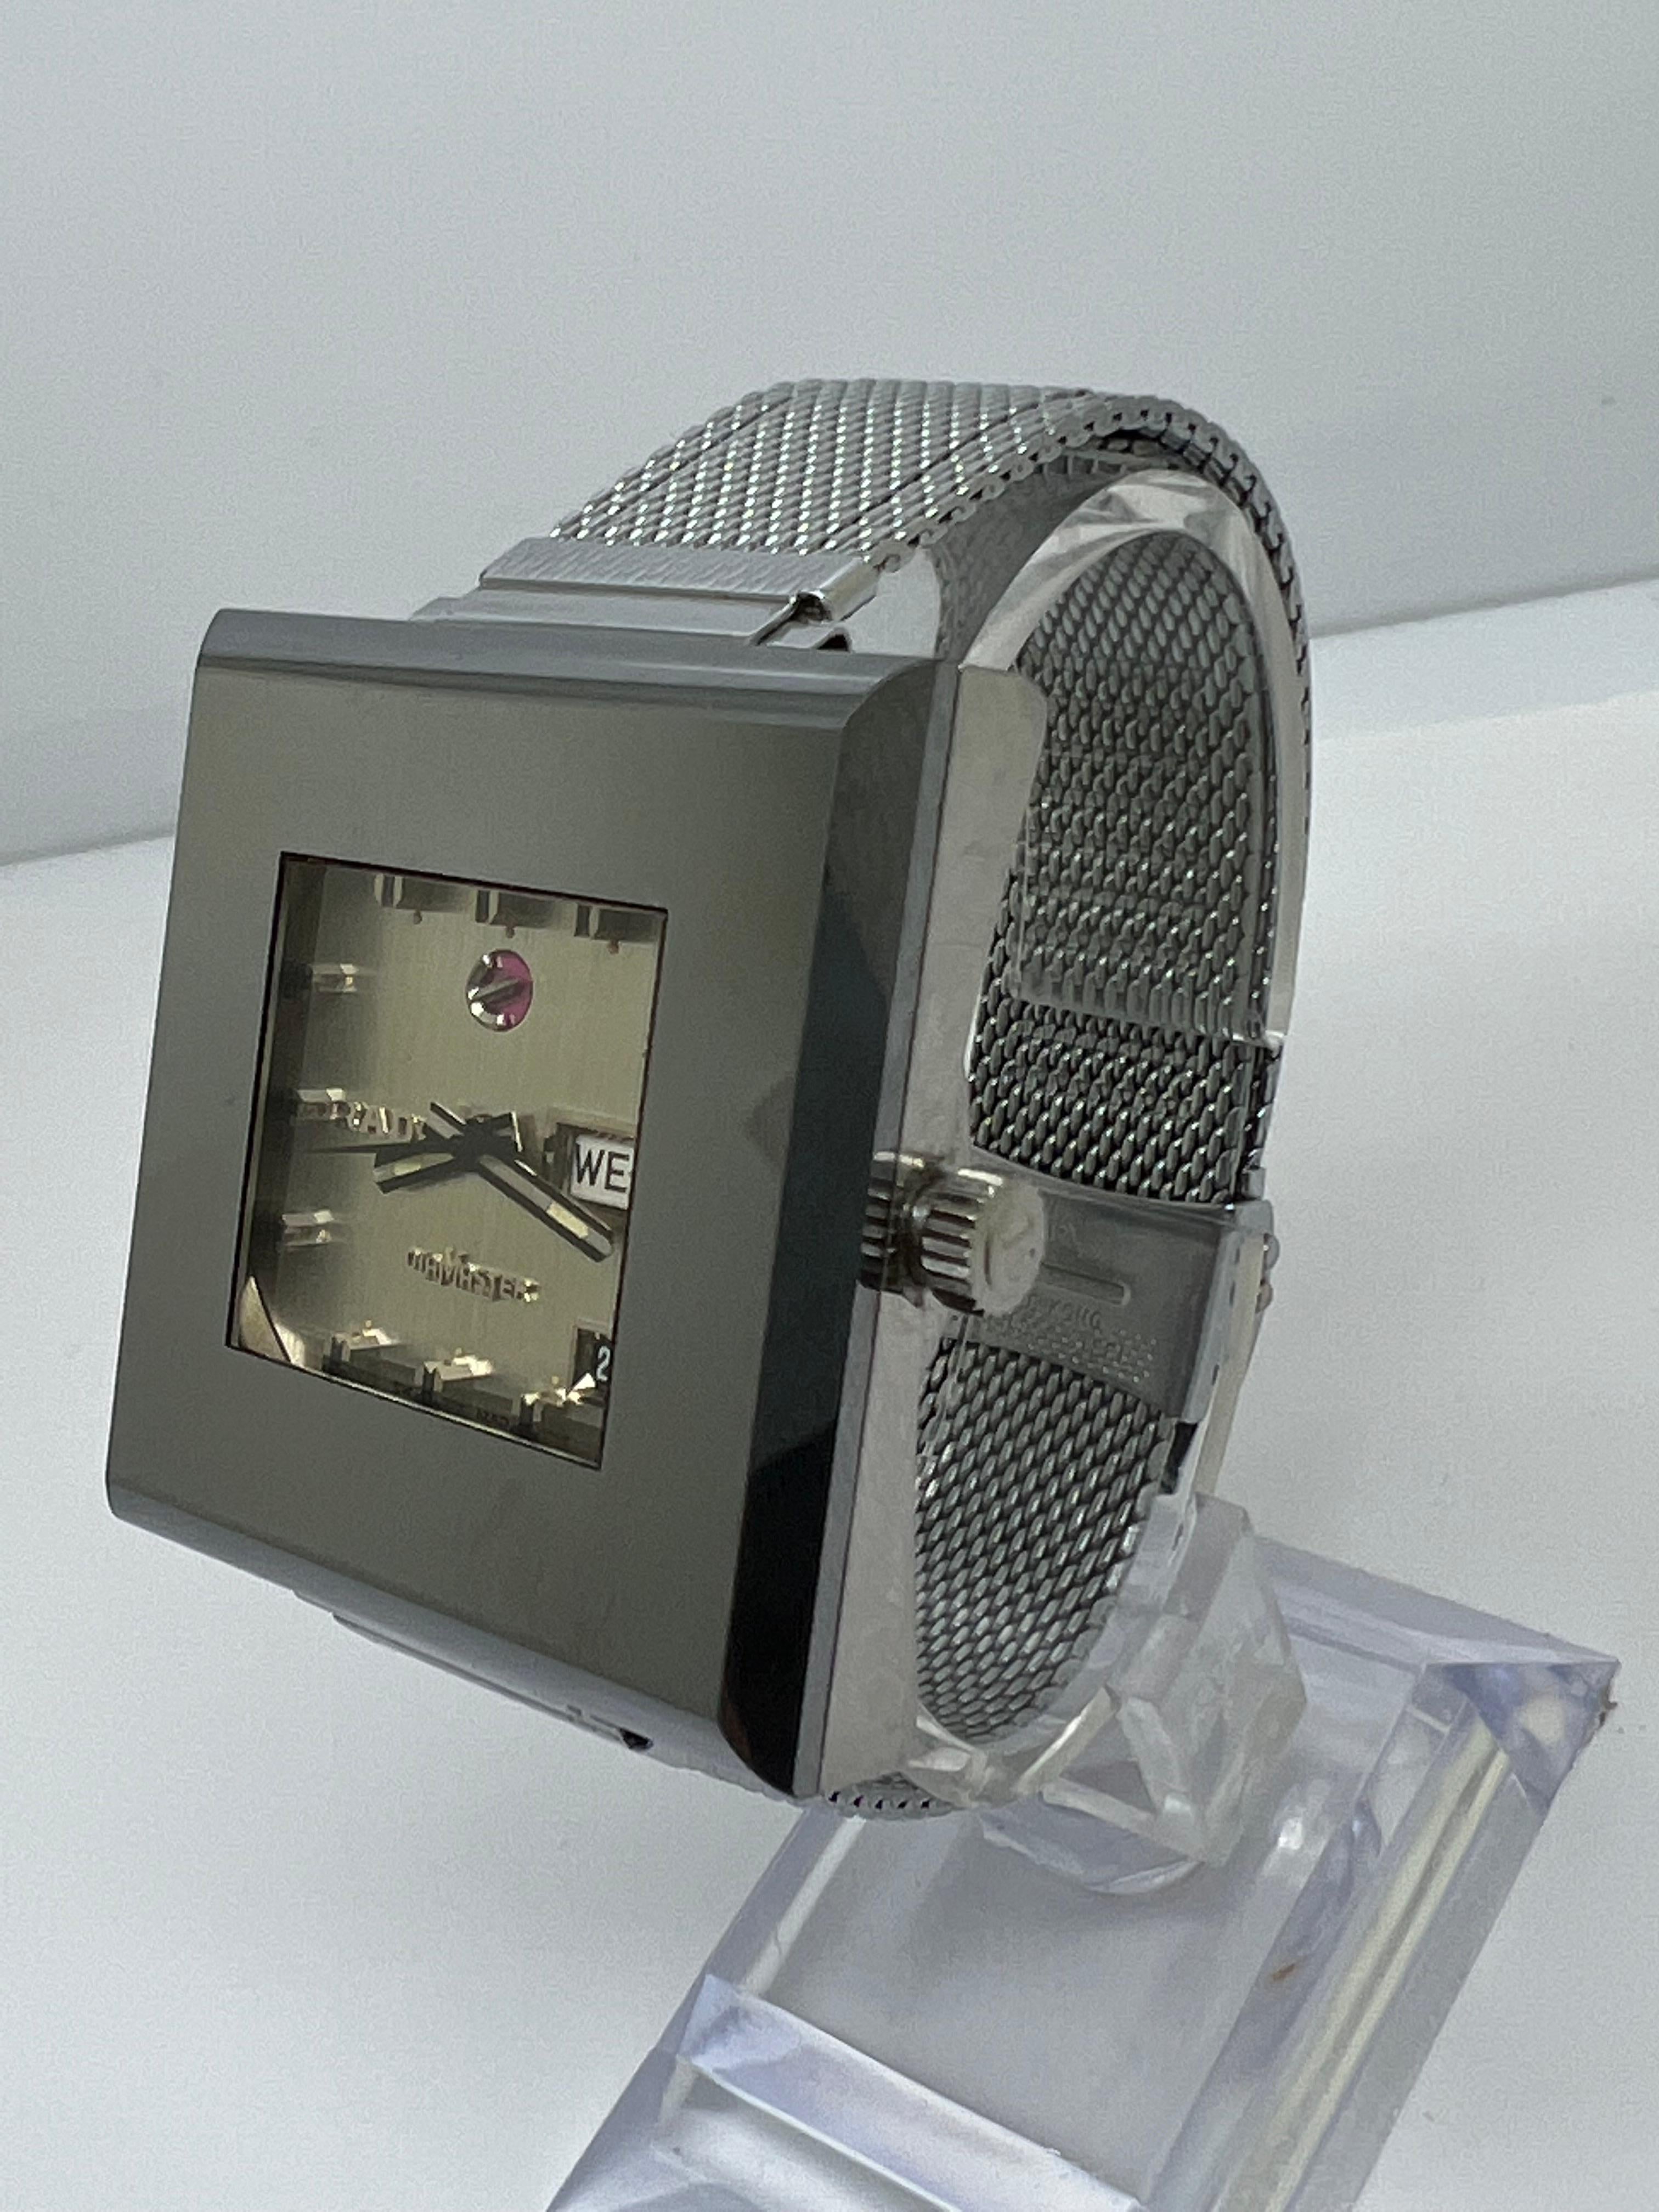 Rado DiaMaster 10 Tumgsten Case Scratchproof Vintage Watch

40mm

toutes les pièces d'origine

excellent état

Rare !!!!!!

Mouvement automatique

fonctionne parfaitement